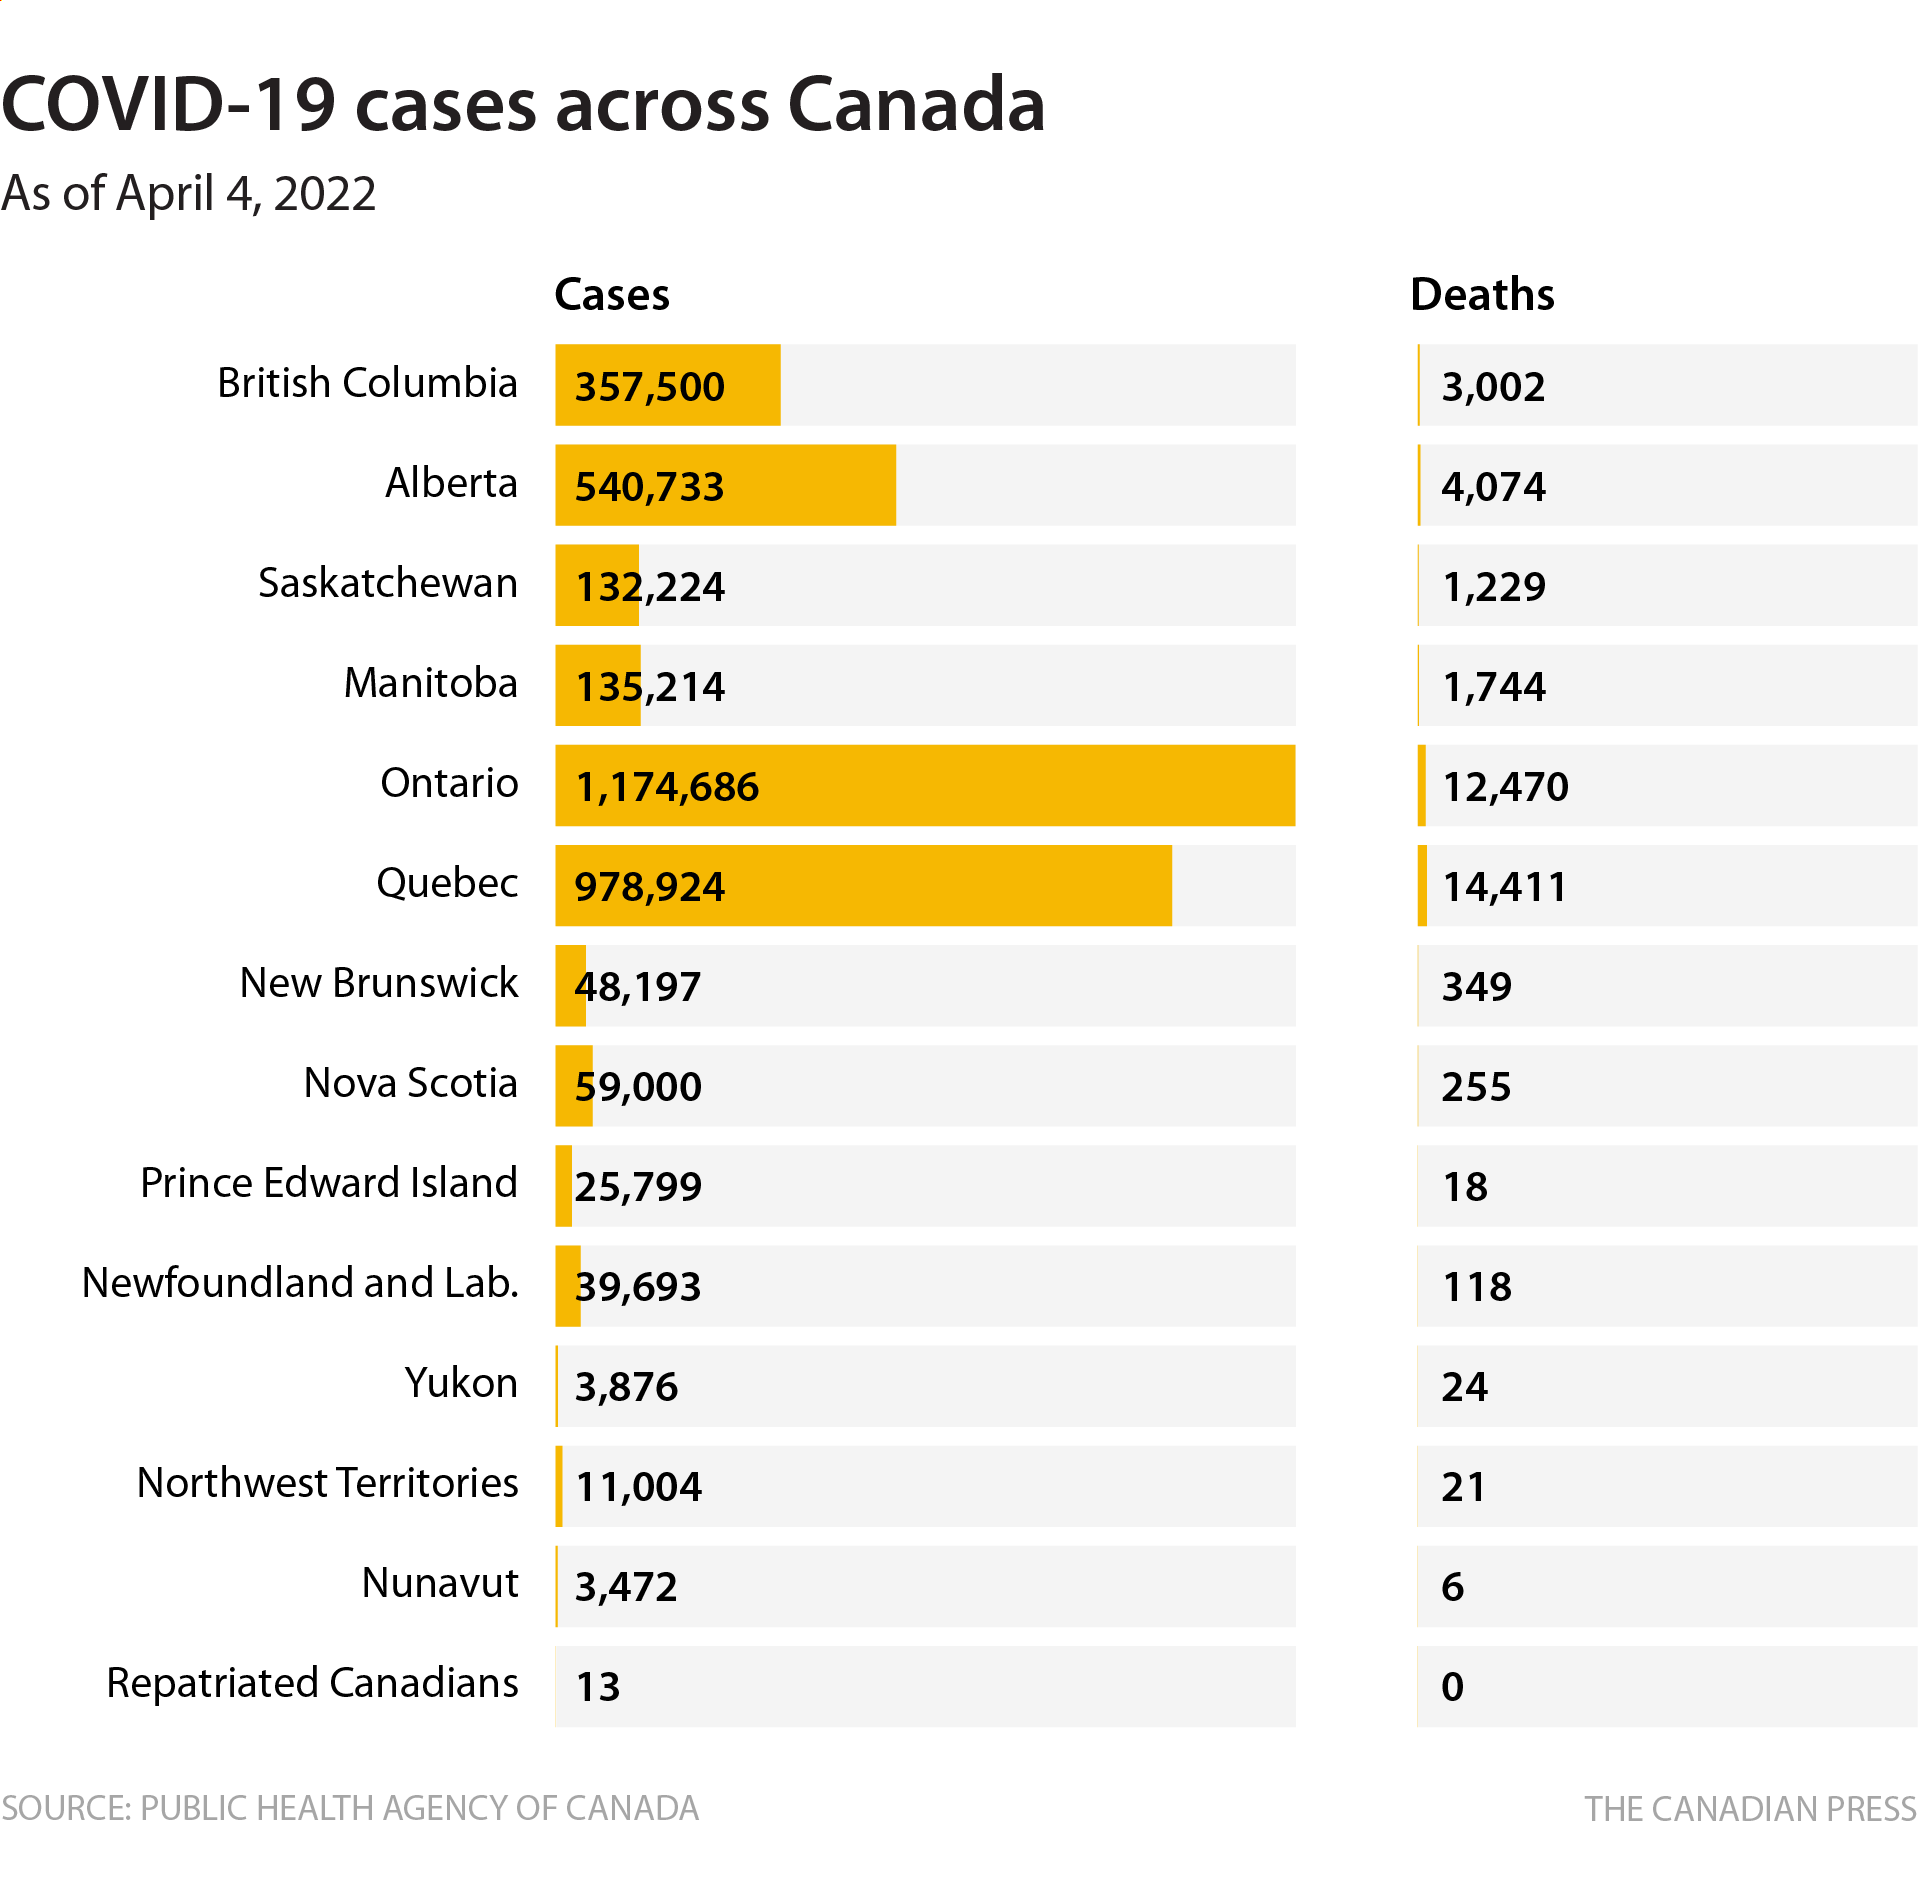 COVID-19 CASES IN CANADA